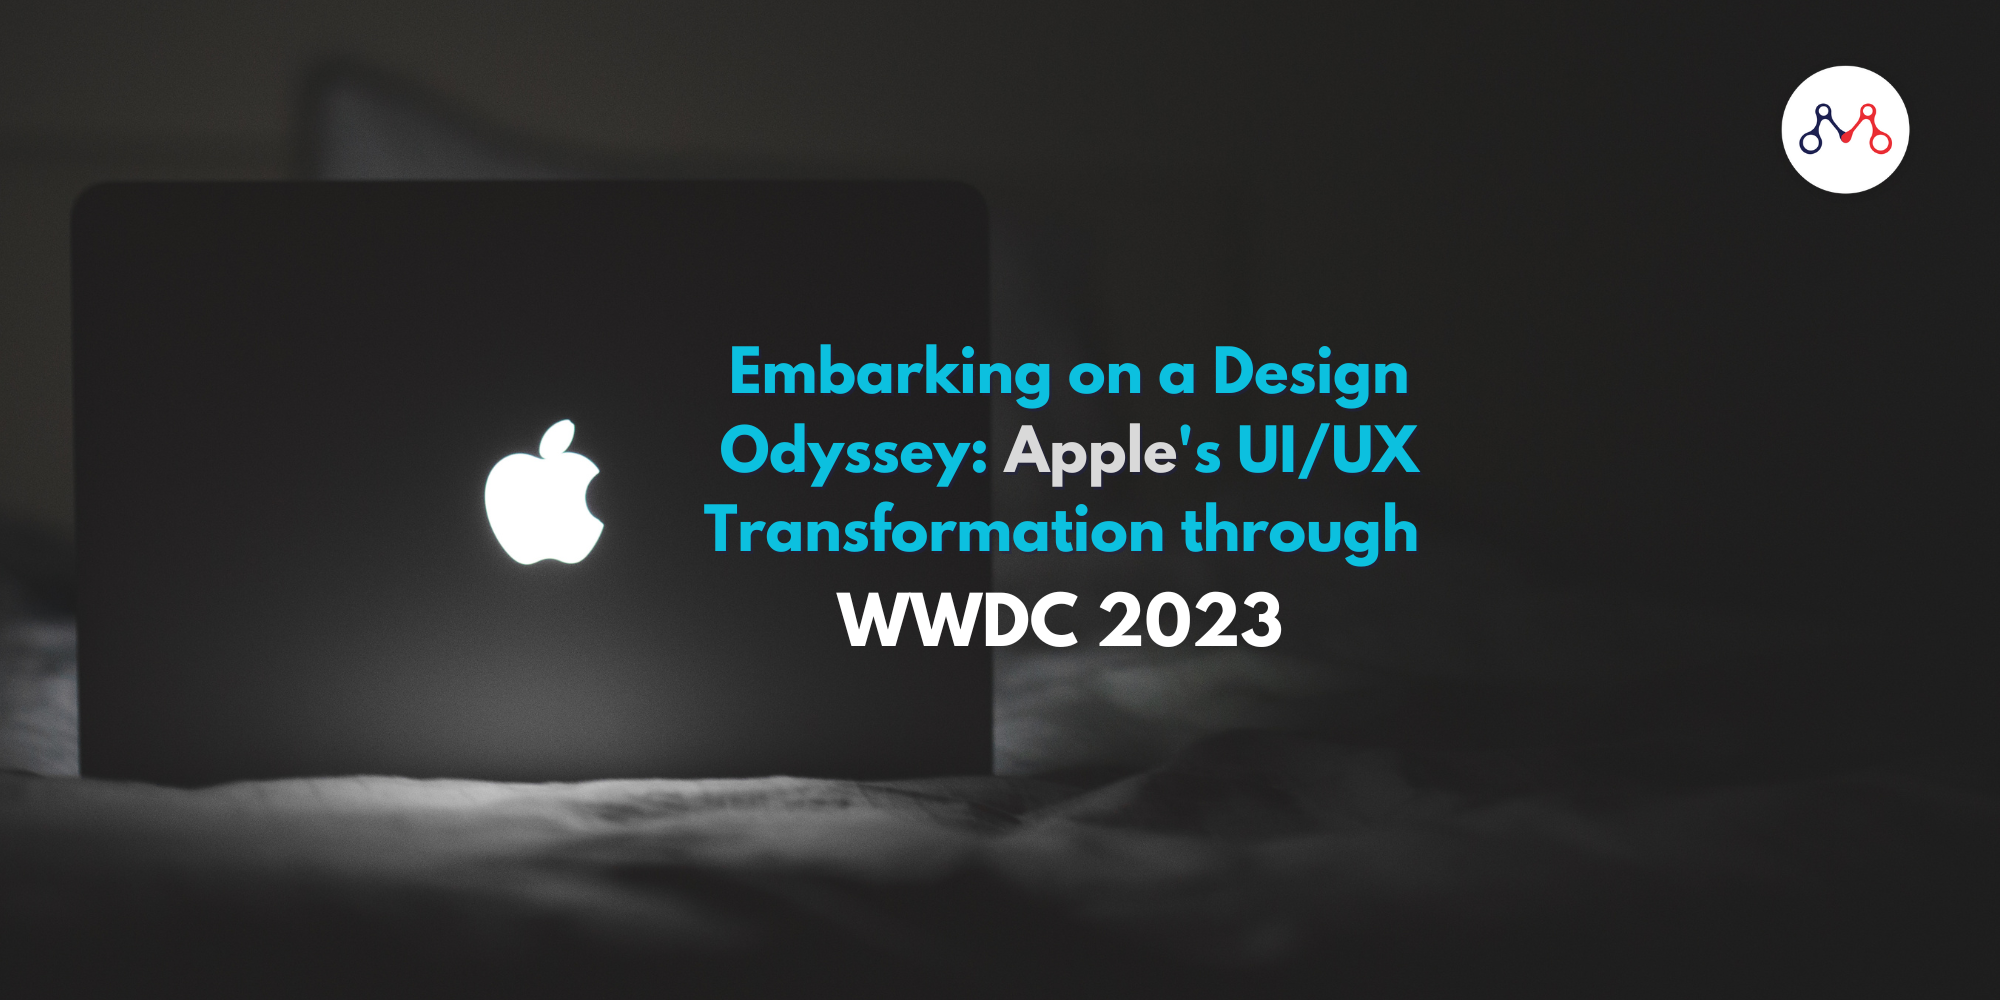 Embarcarse en una odisea del diseño: la transformación UI/UX de Apple hasta la WWDC 2023